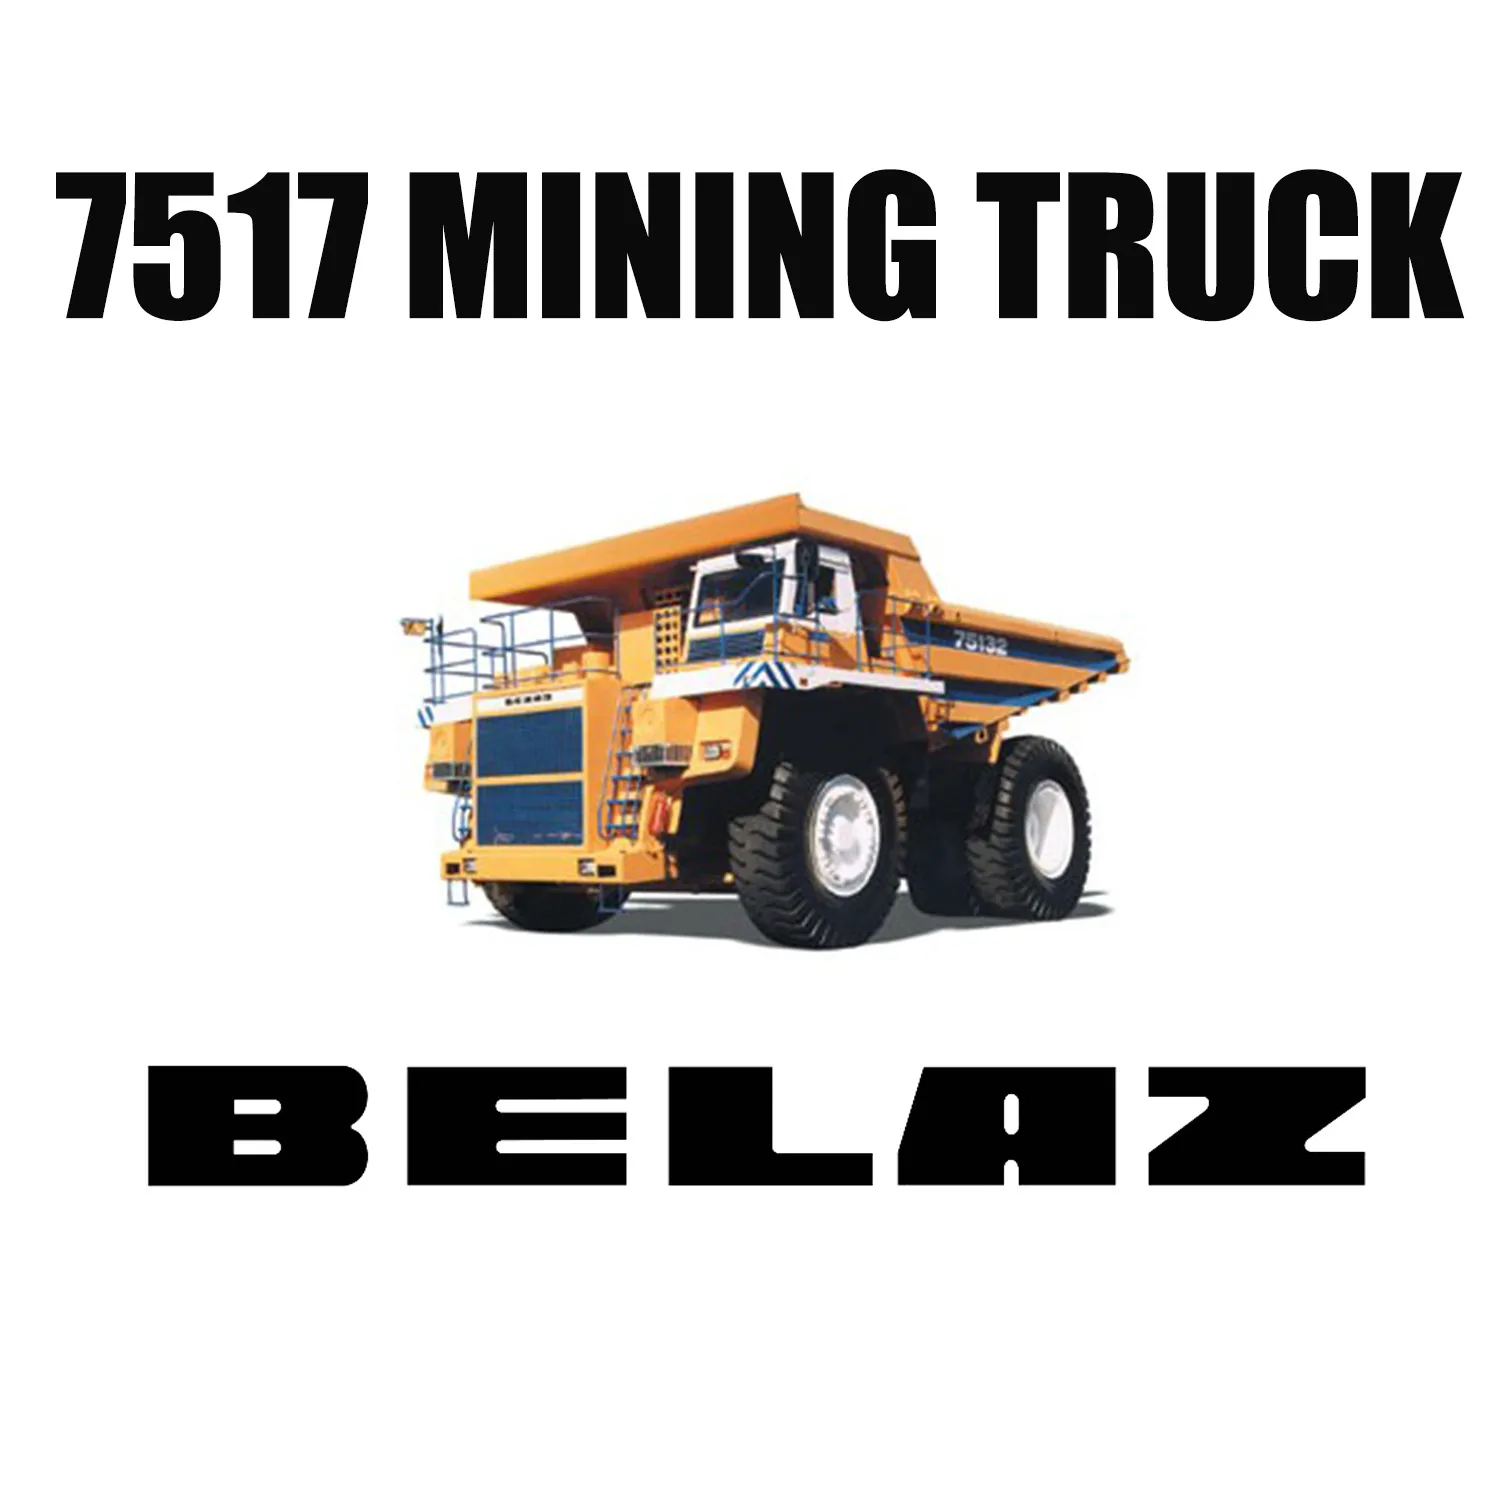 36.00R51 Pneus de Mineração Fora da Estrada instalados em BELAZ-7517 para Mina de Carvão